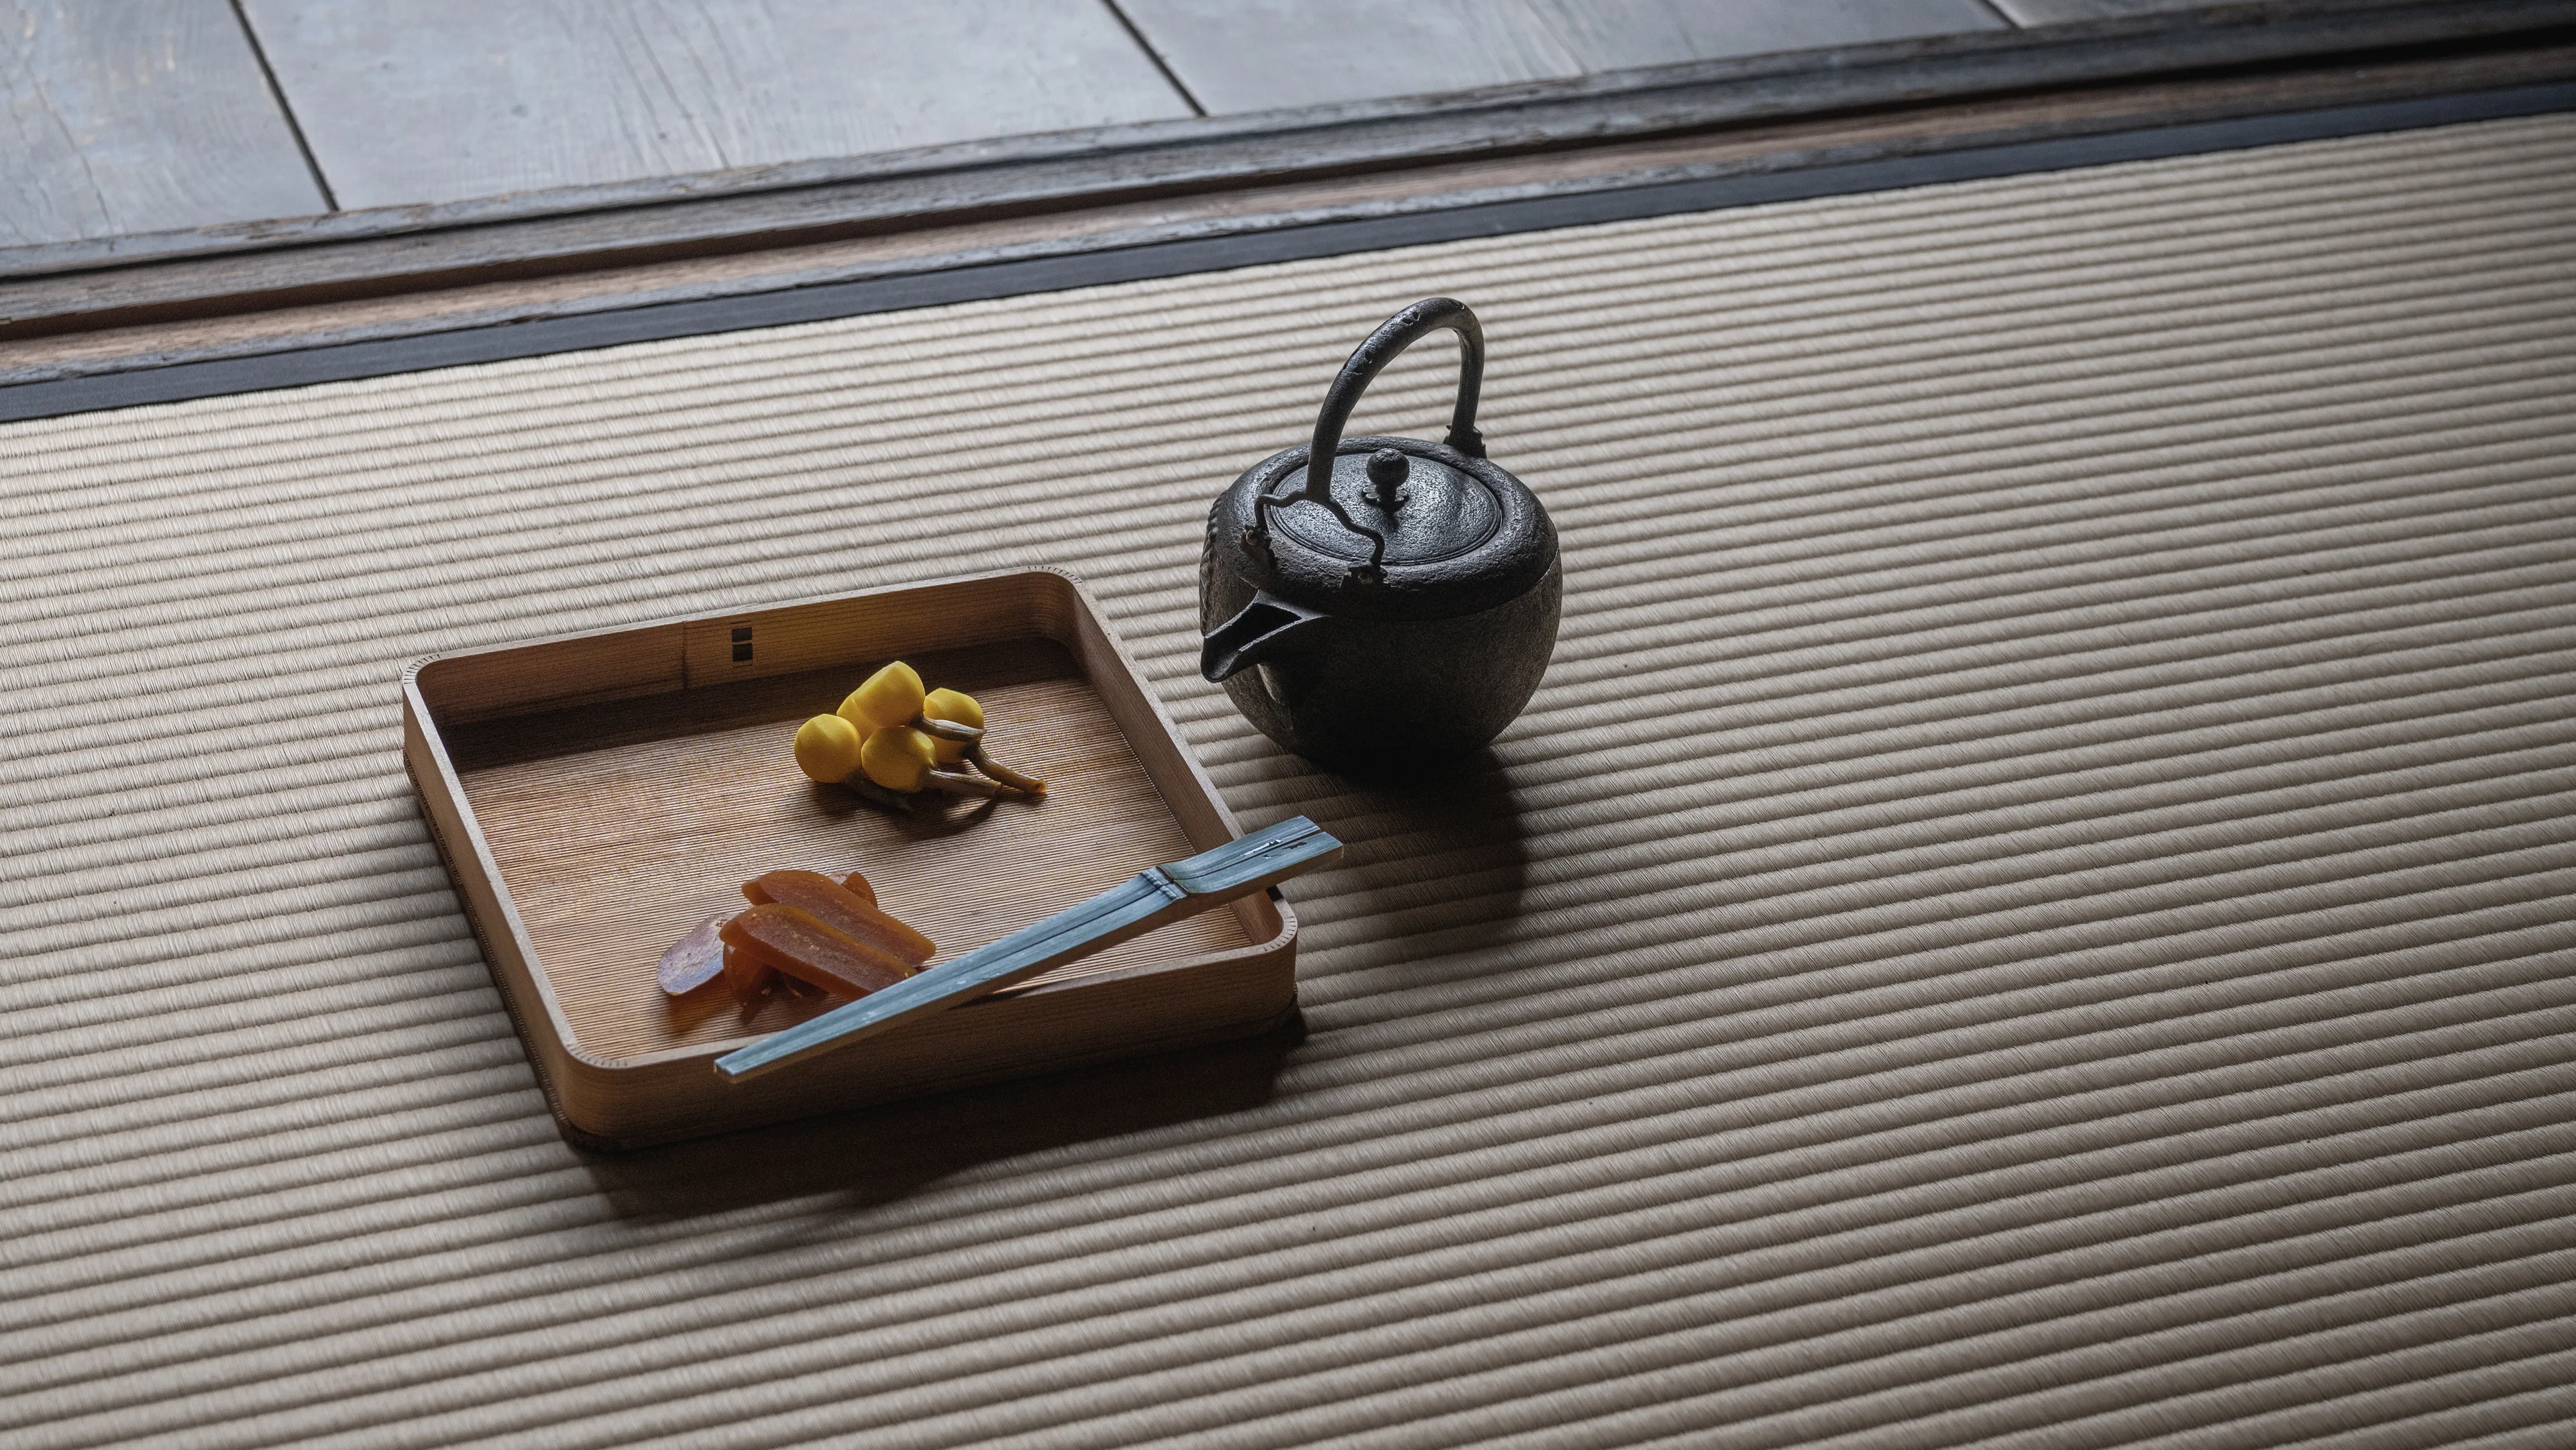 สัมผัสประสบการณ์แก่นแท้ของจิตวิญญาณญี่ปุ่นผ่านพิธีชงชา หัวใจของการต้อนรับแบบญี่ปุ่น